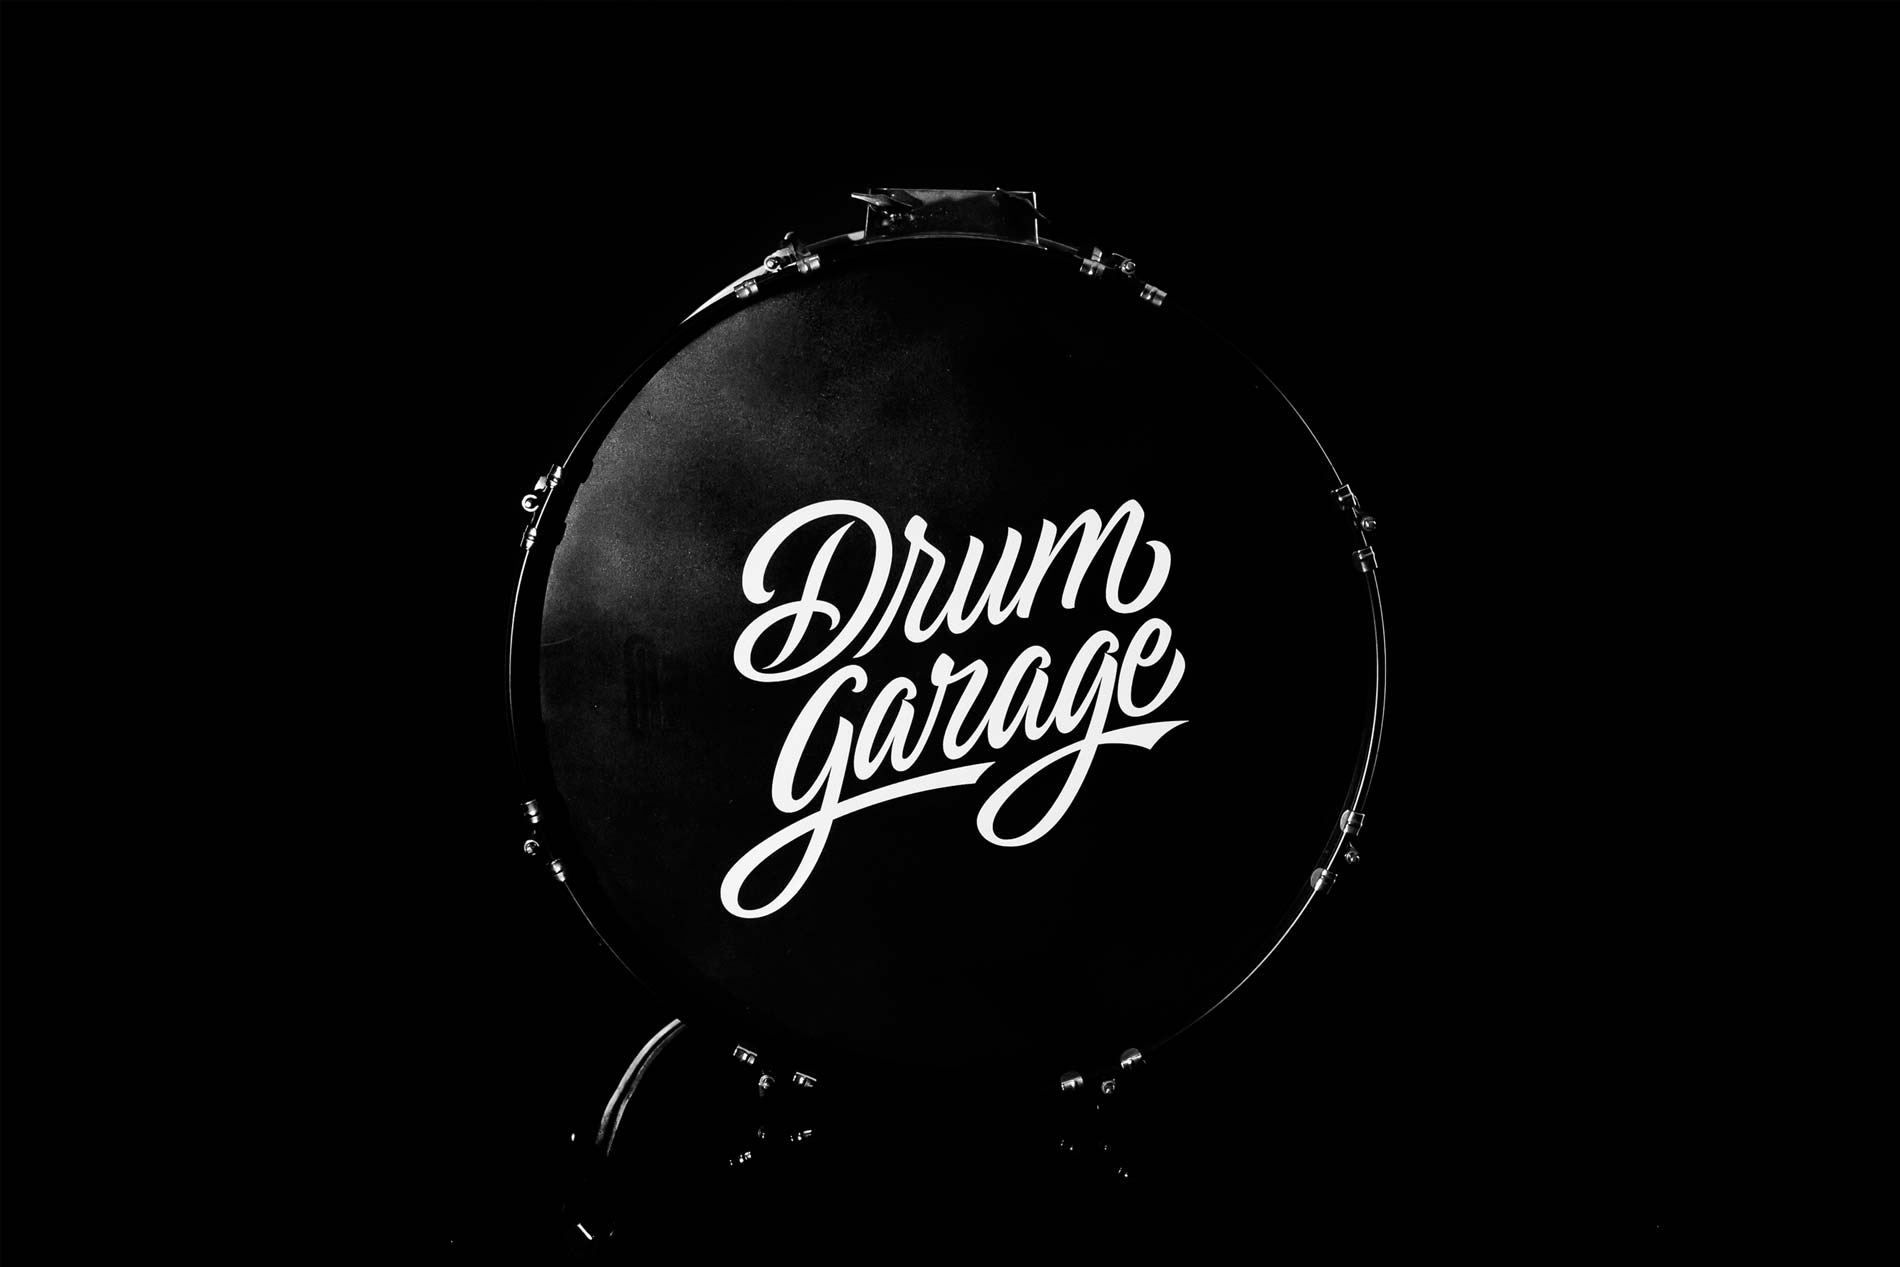 1-drum-garage-1